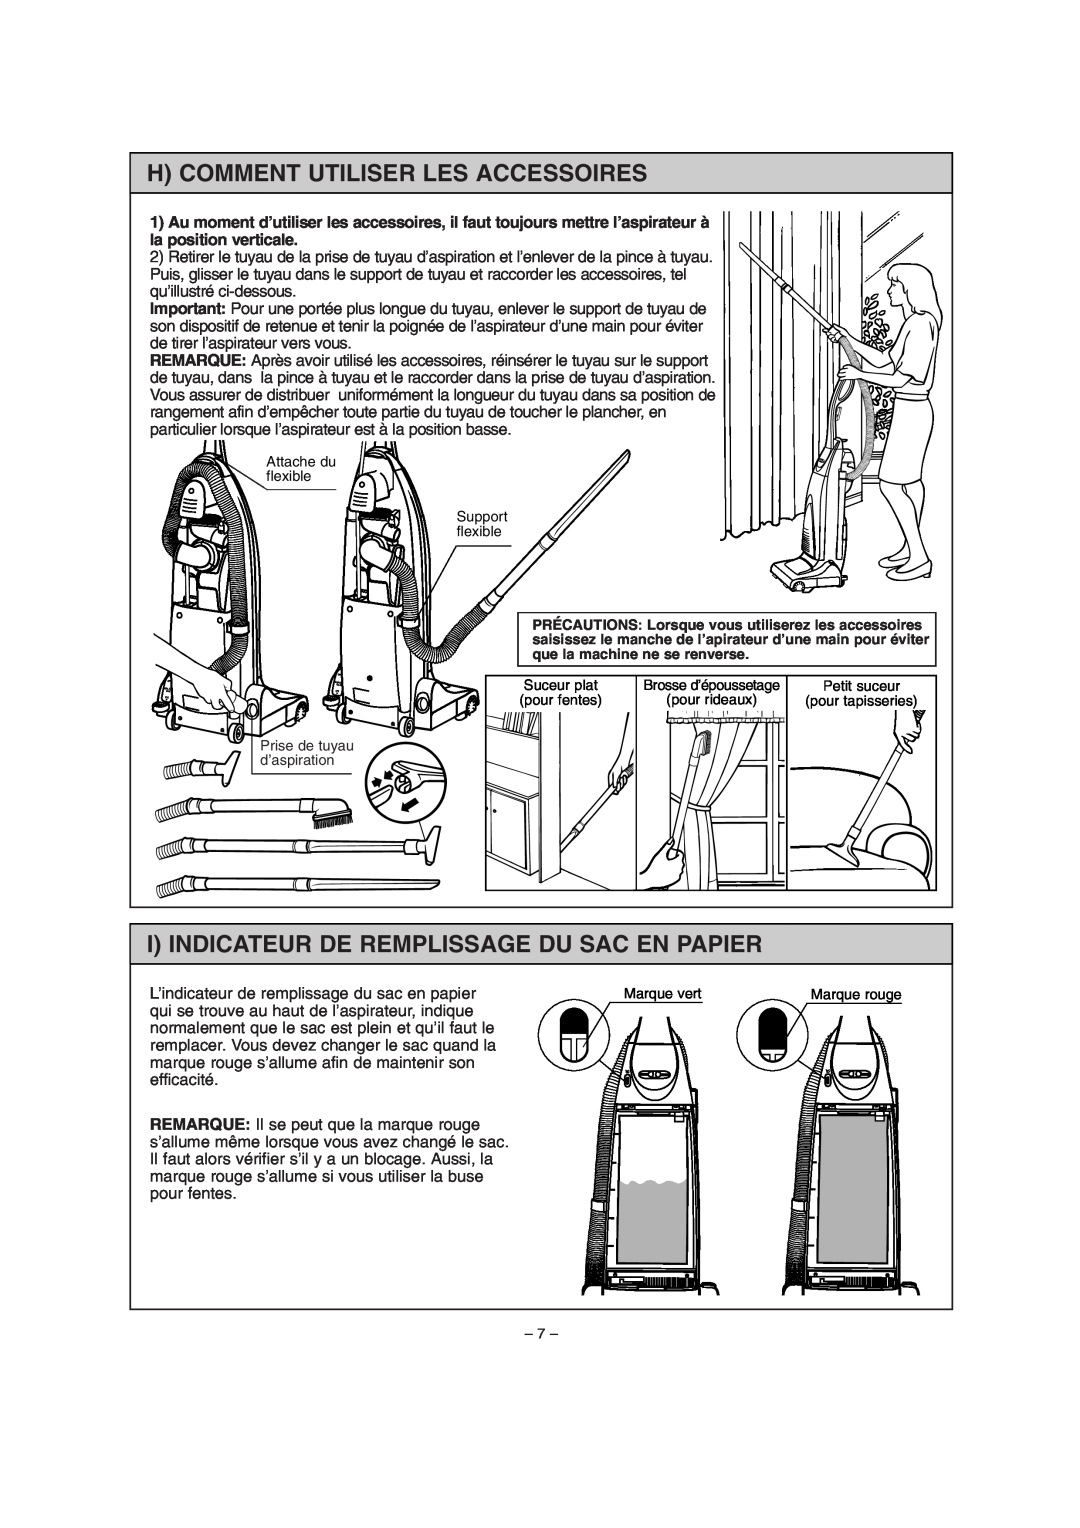 Miele S179i important safety instructions H Comment Utiliser Les Accessoires, I Indicateur De Remplissage Du Sac En Papier 